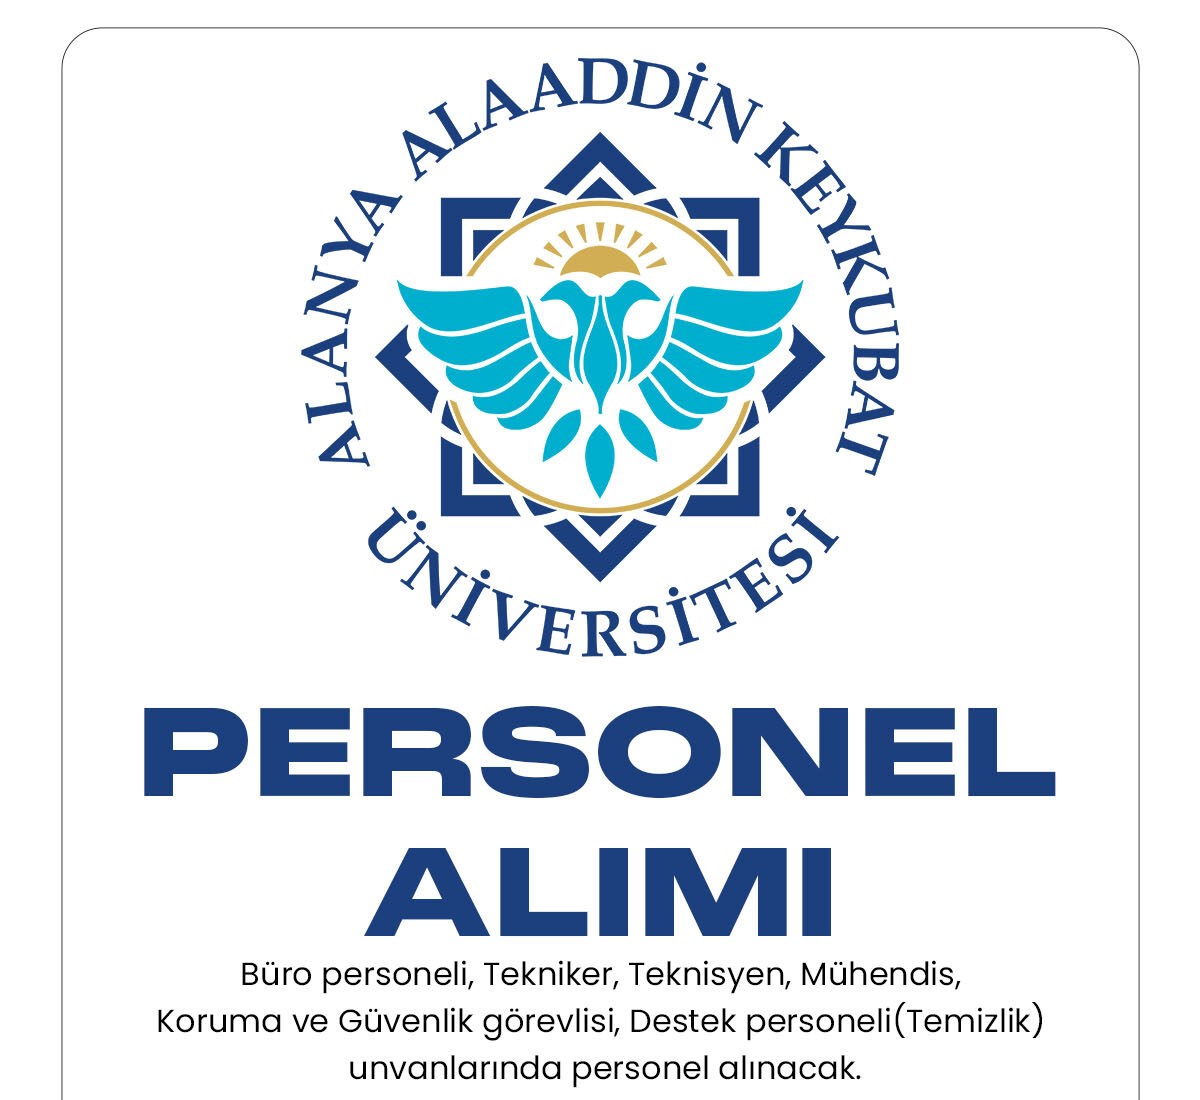 Aladdin Keykubat Üniversitesi personel alımı başvuru süreci devam ediyor.